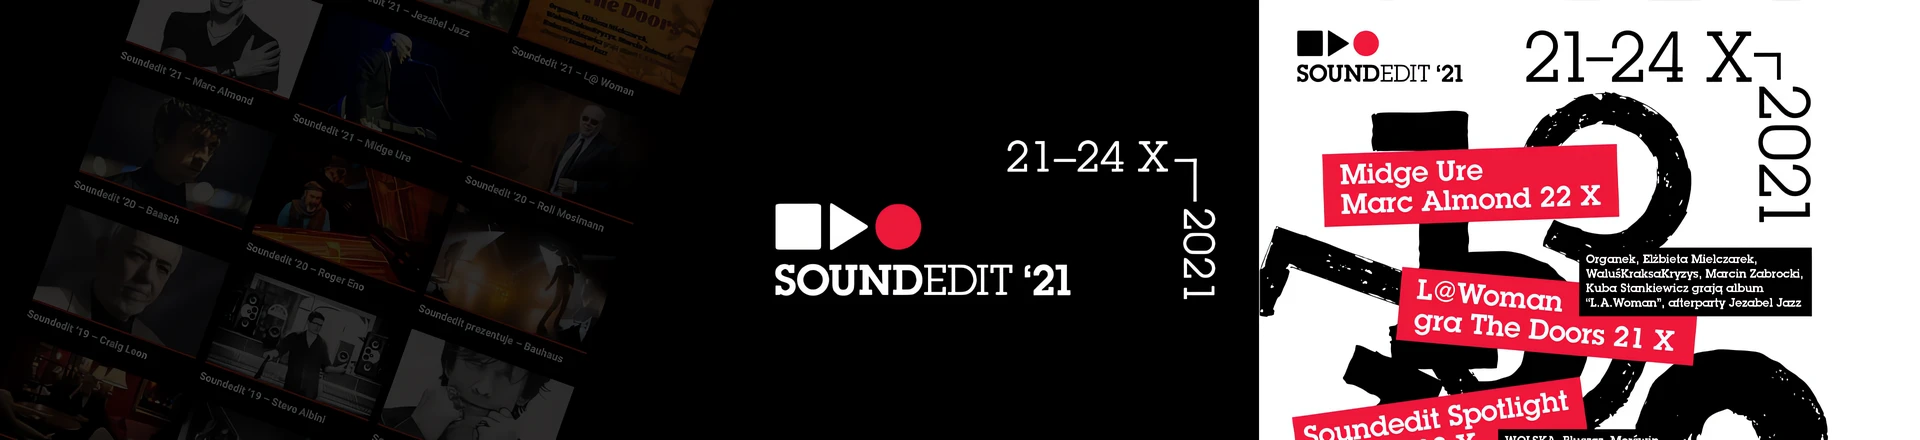 Soundedit 2021 już w październiku! Prawdziwe święto dla producentów muzycznych (muzyka & edukacja) - patronat INFOMUSIC.PL